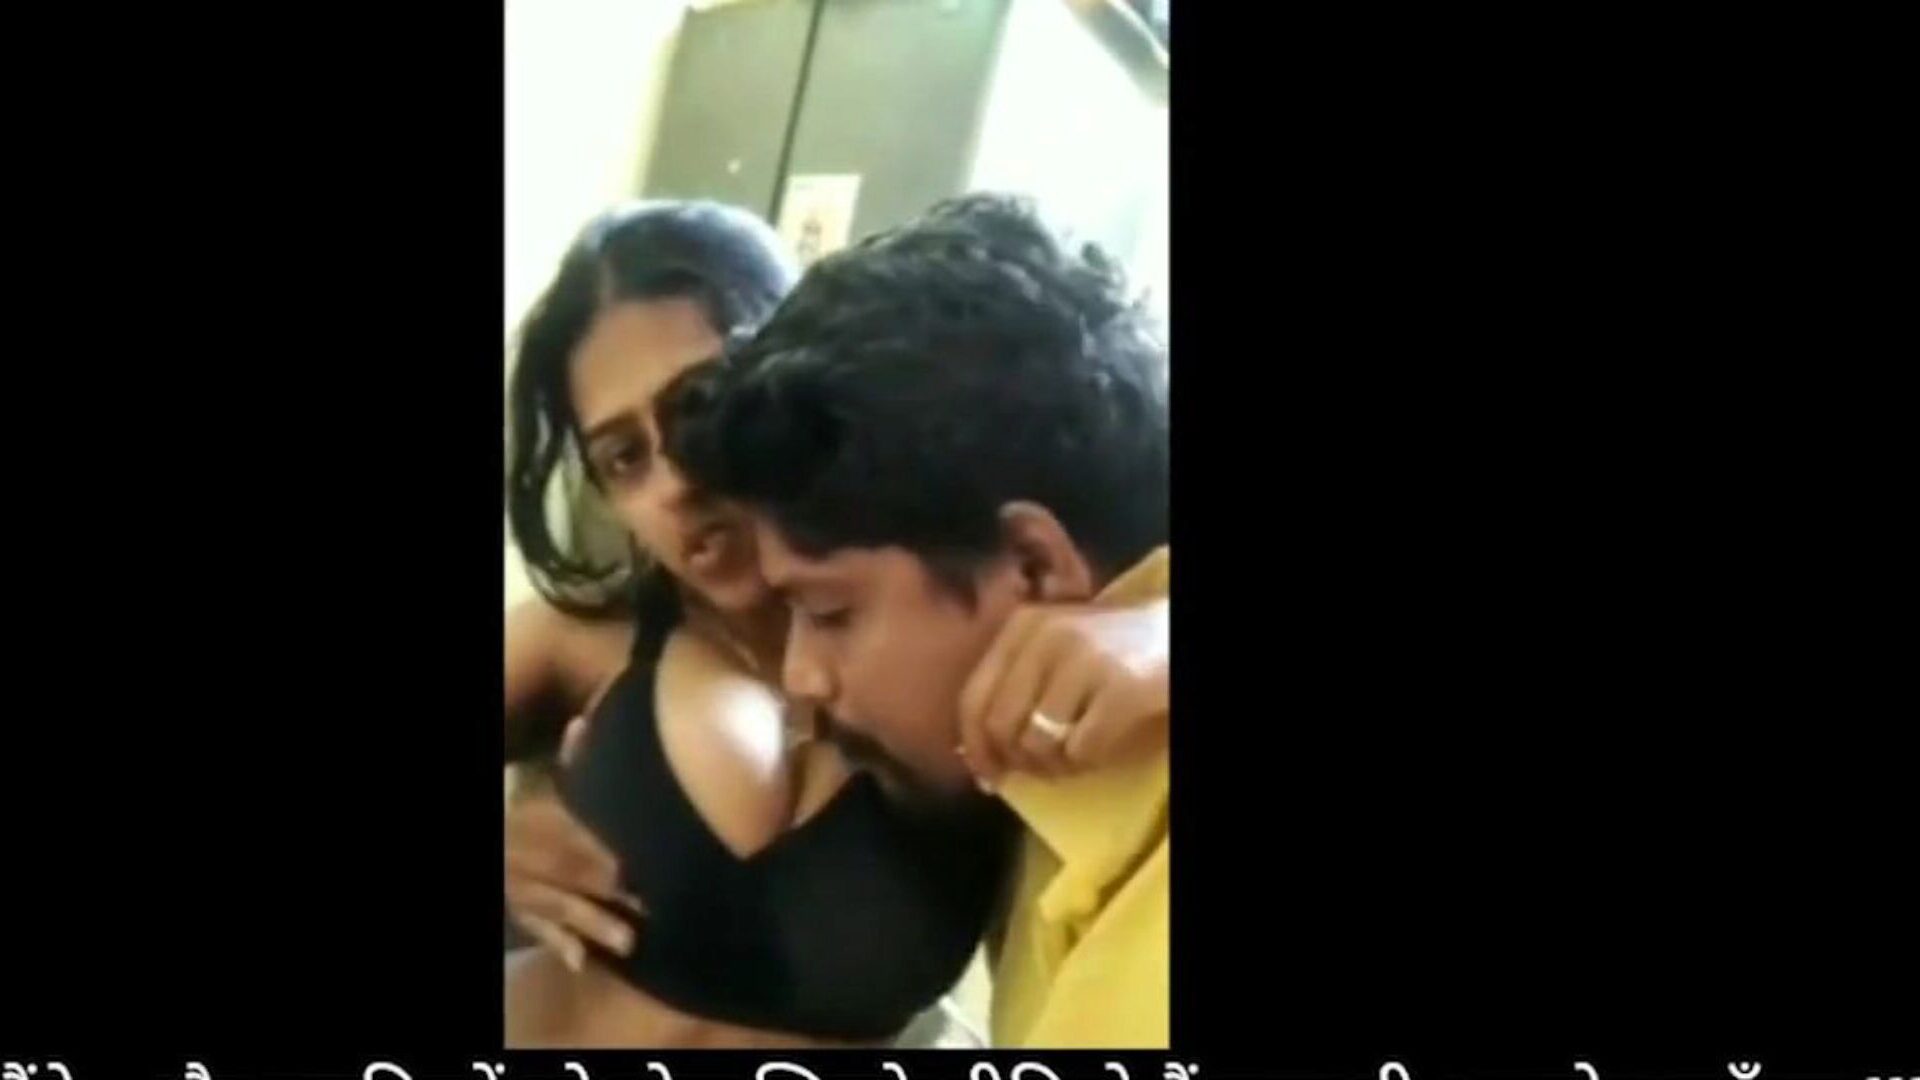 bhabhi Devar домашнего секс весело во время строгой изоляции: бесплатно HD порно смотреть метрономы bhabhi Devar дома секс удовольствие во время Lockdown эпизода на xhamster - окончательный архив бесплатно для всех индийских порно-бесплатно домашнего секса HD хой порнография трубных